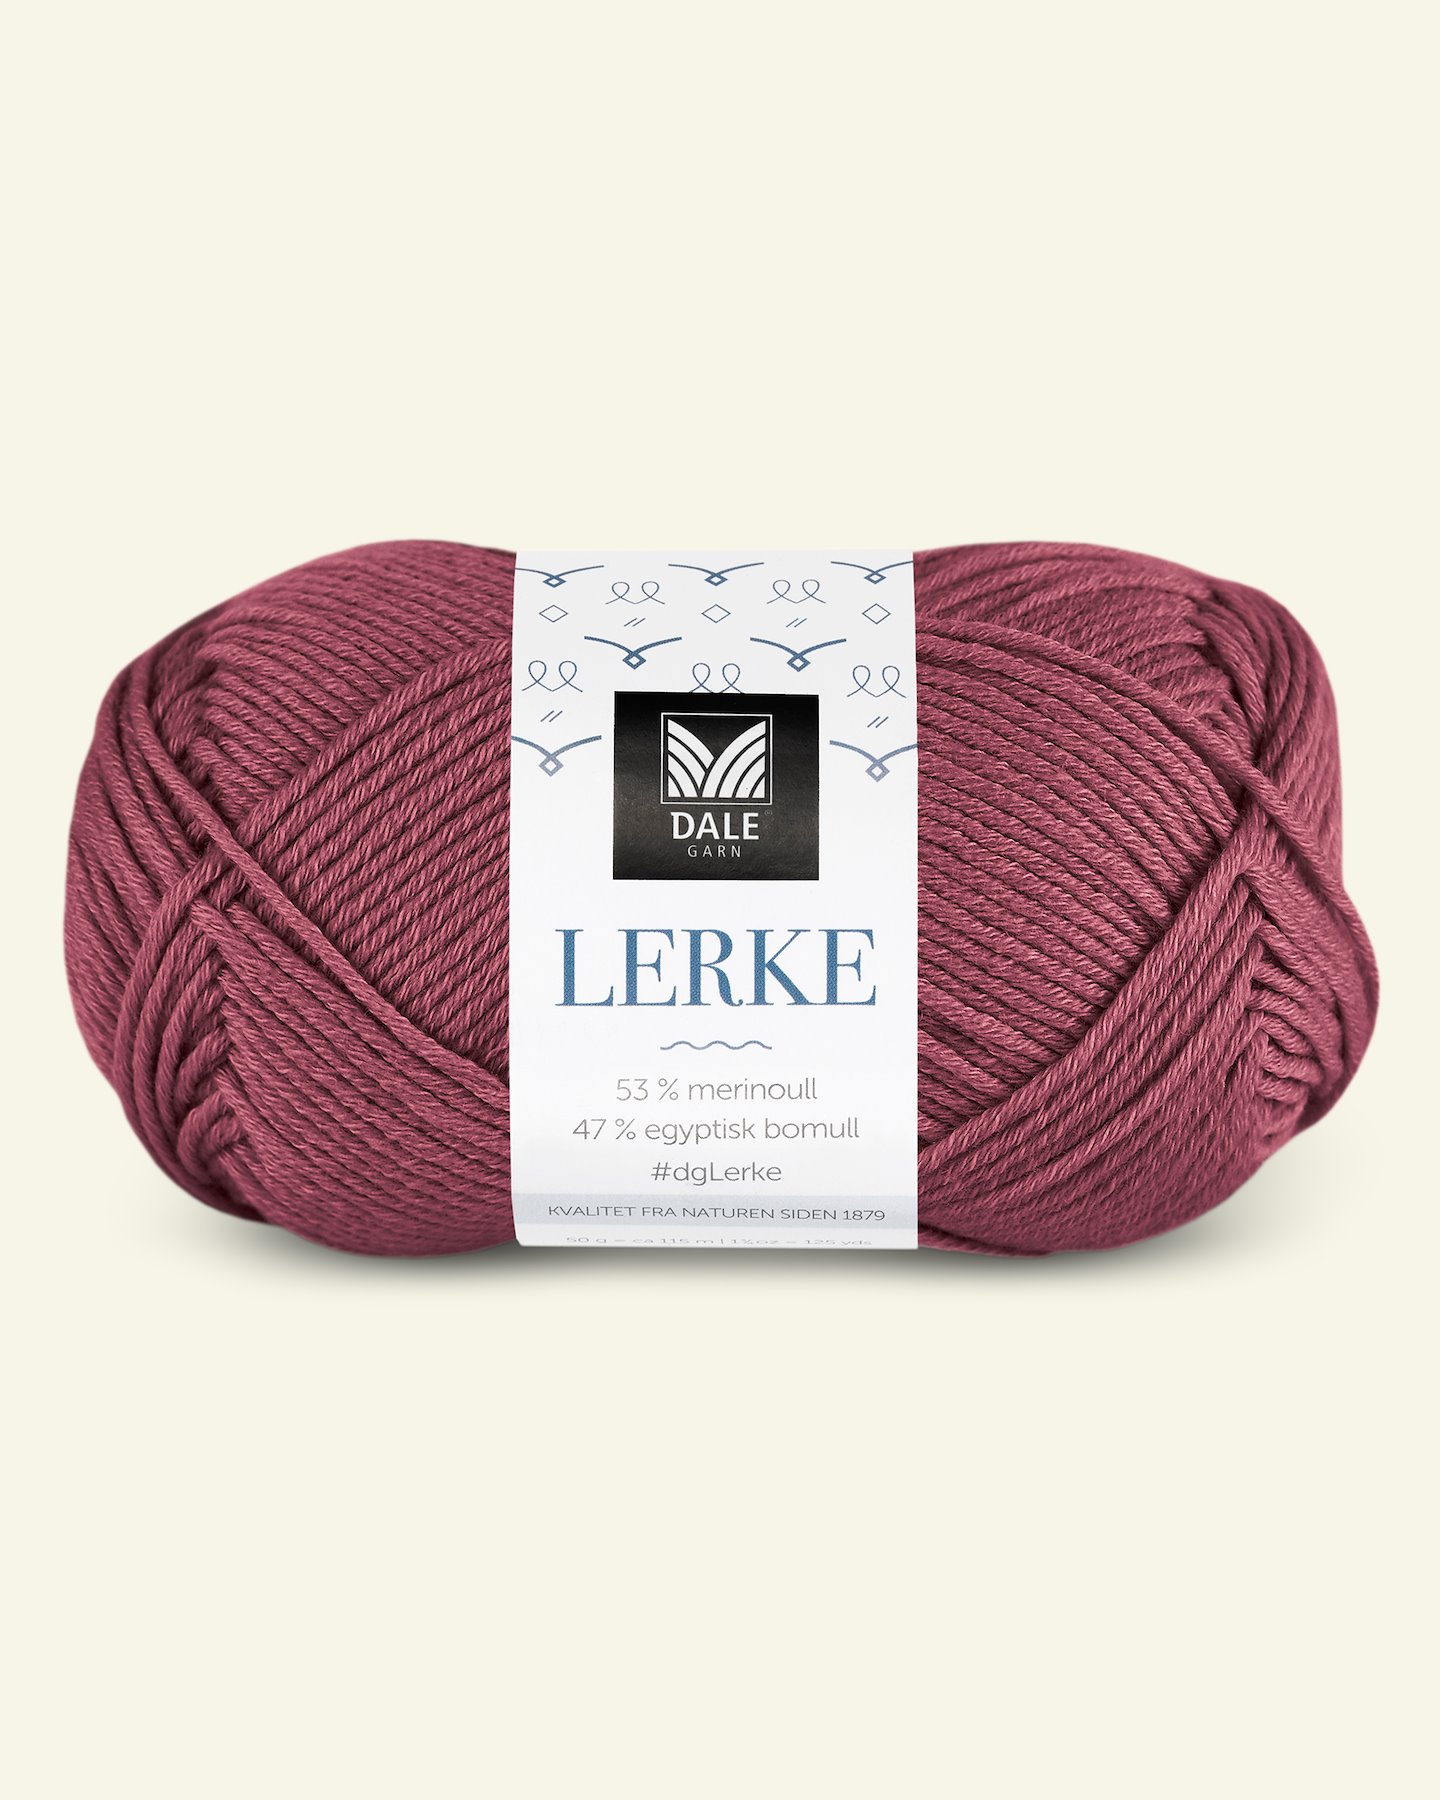 Dale Garn, merino cotton yarn "Lerke", plum (8148) 90000854_pack